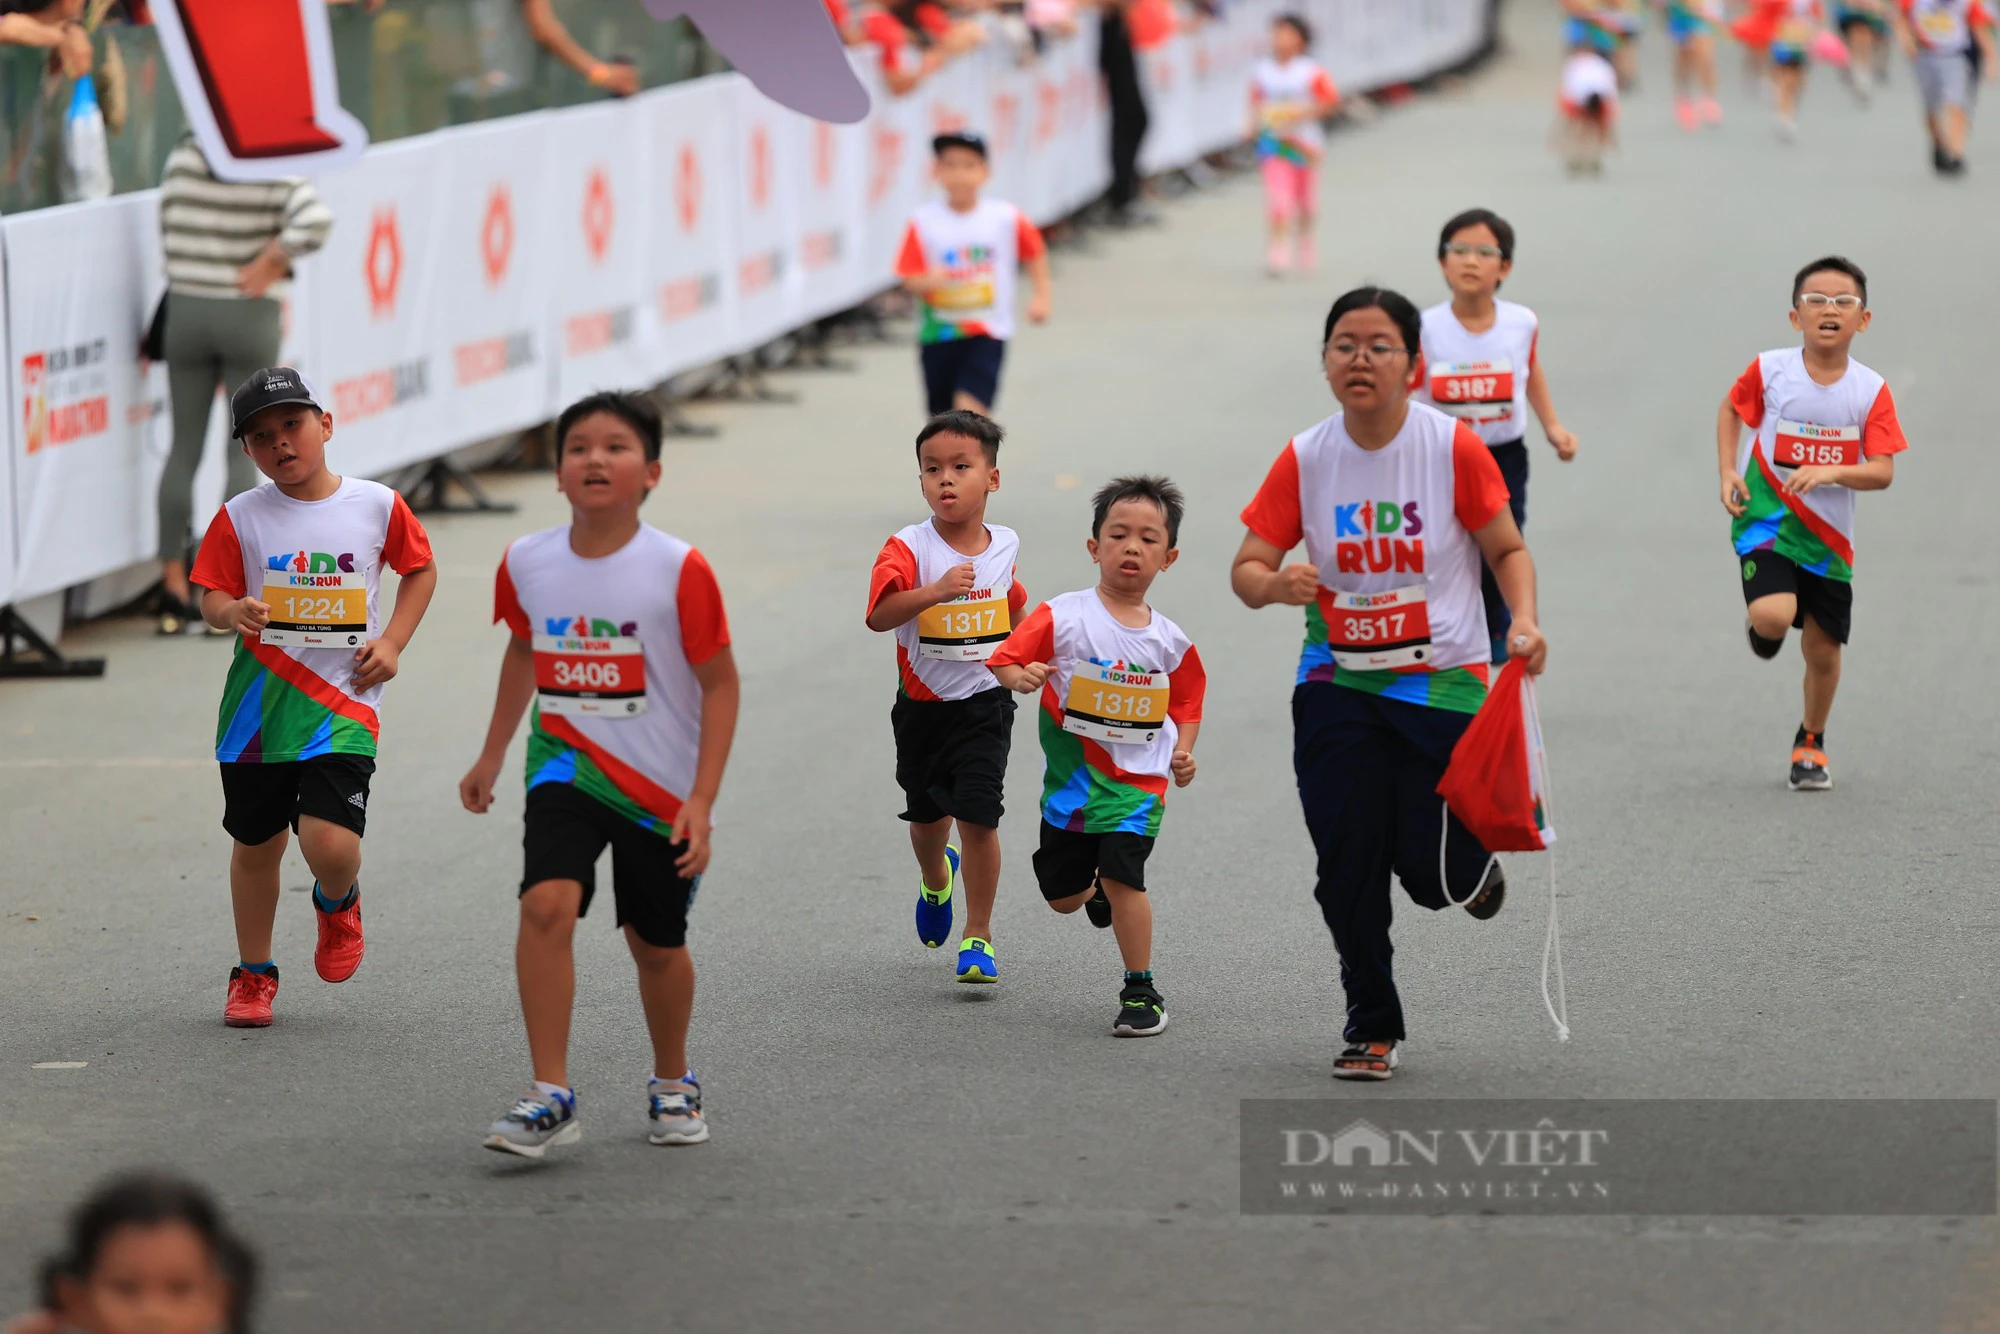 Hơn 1.000 vận động viên nhí tham gia giải chạy Kids Run - Ảnh 2.